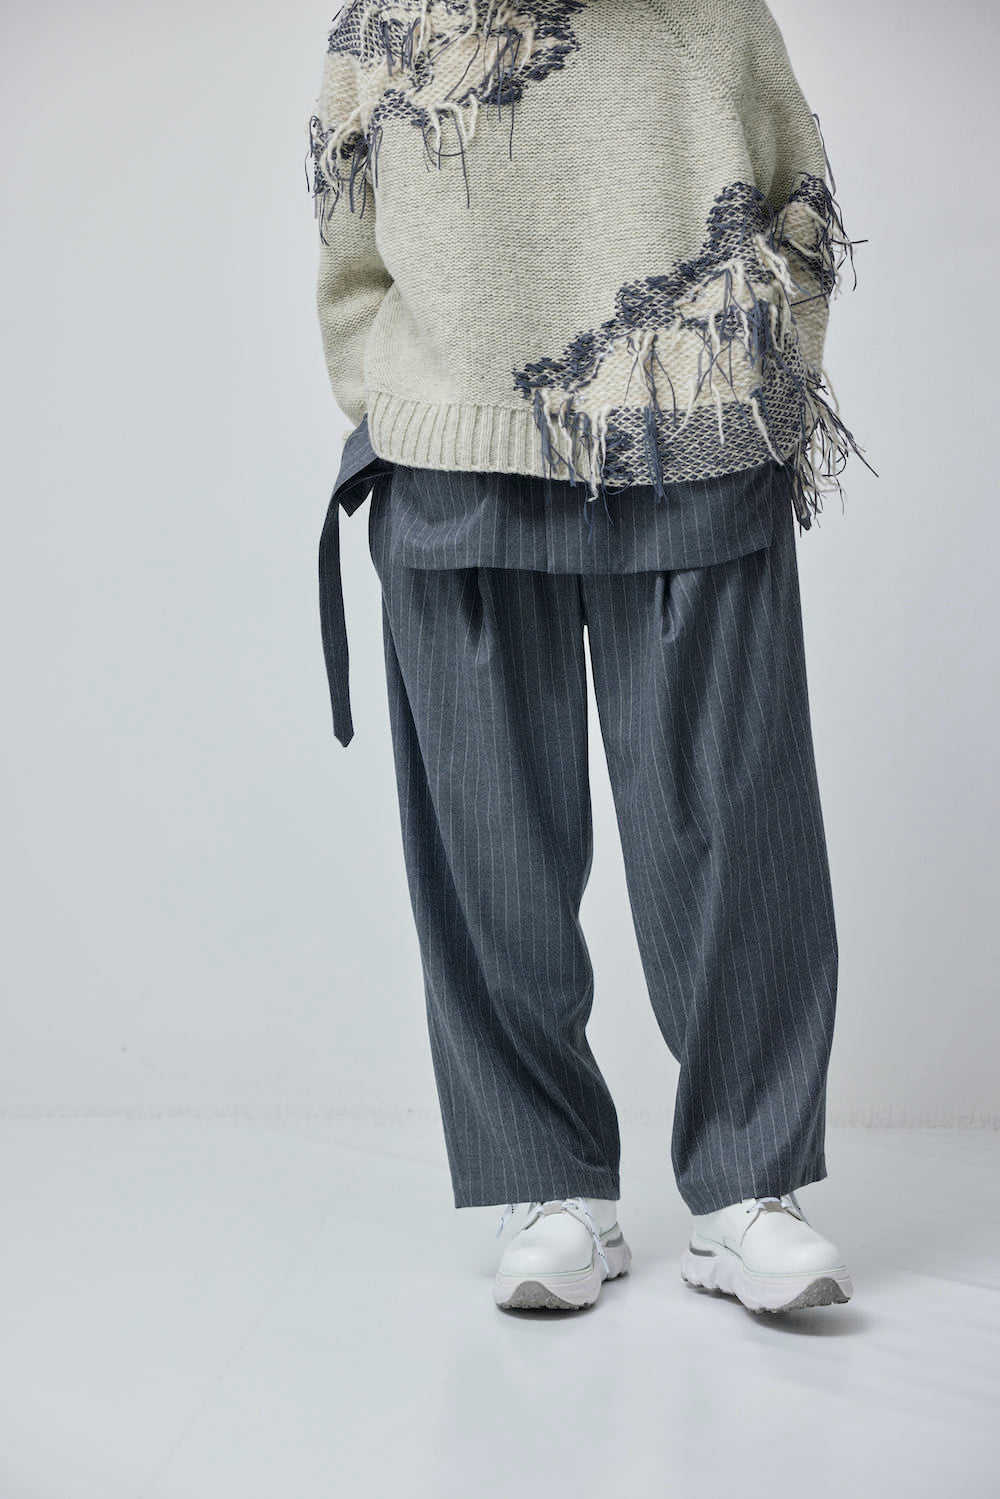 LB23AW-PT05-GST | 条纹羊毛哔叽口袋褶边宽裤 | 灰色条纹